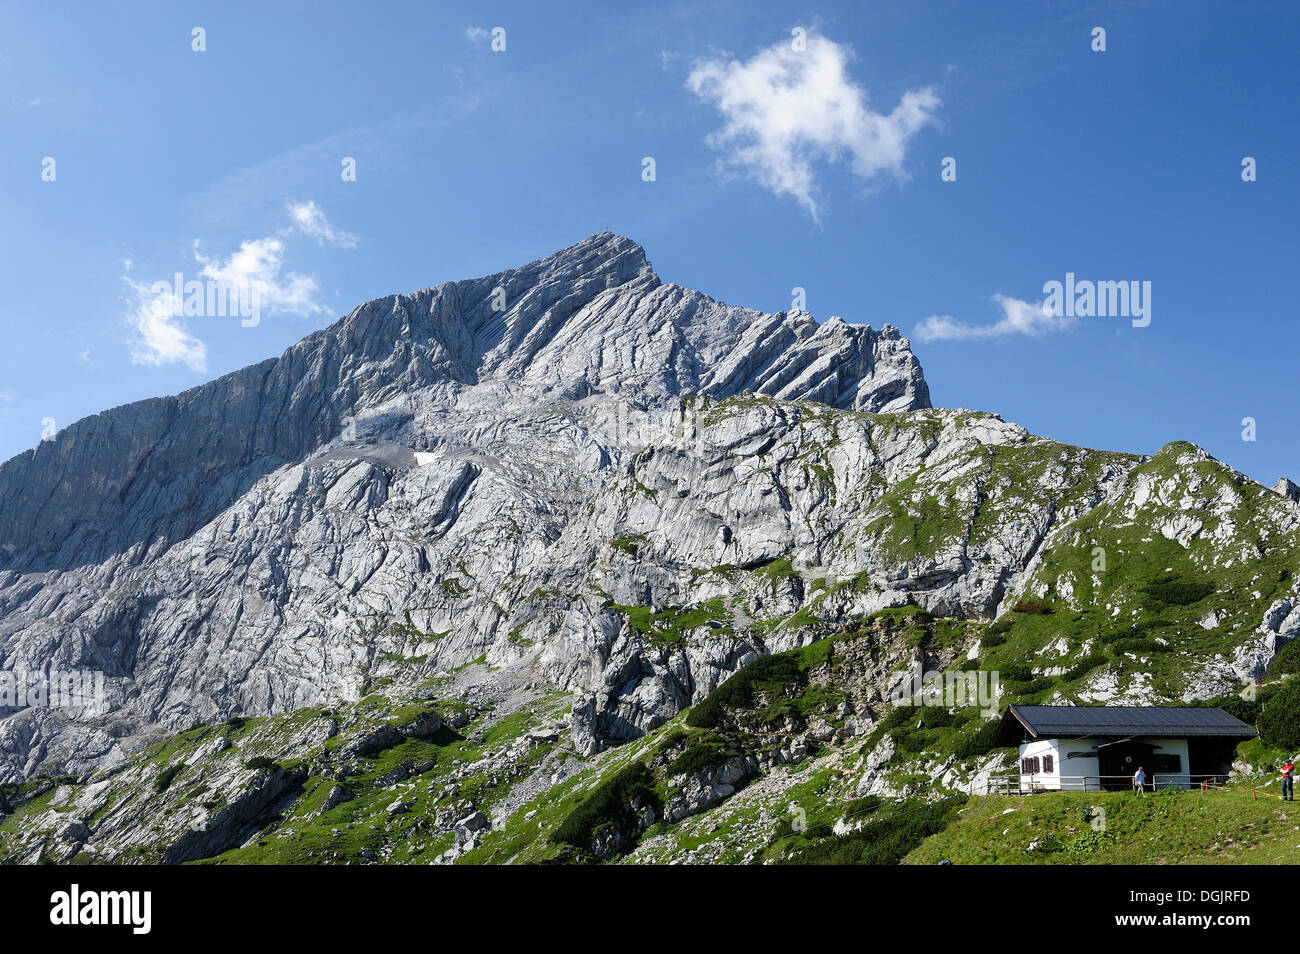 Mt Alpspitze, Wetterstein range, Garmisch-Partenkirchen, Upper Bavaria, Bavaria Stock Photo